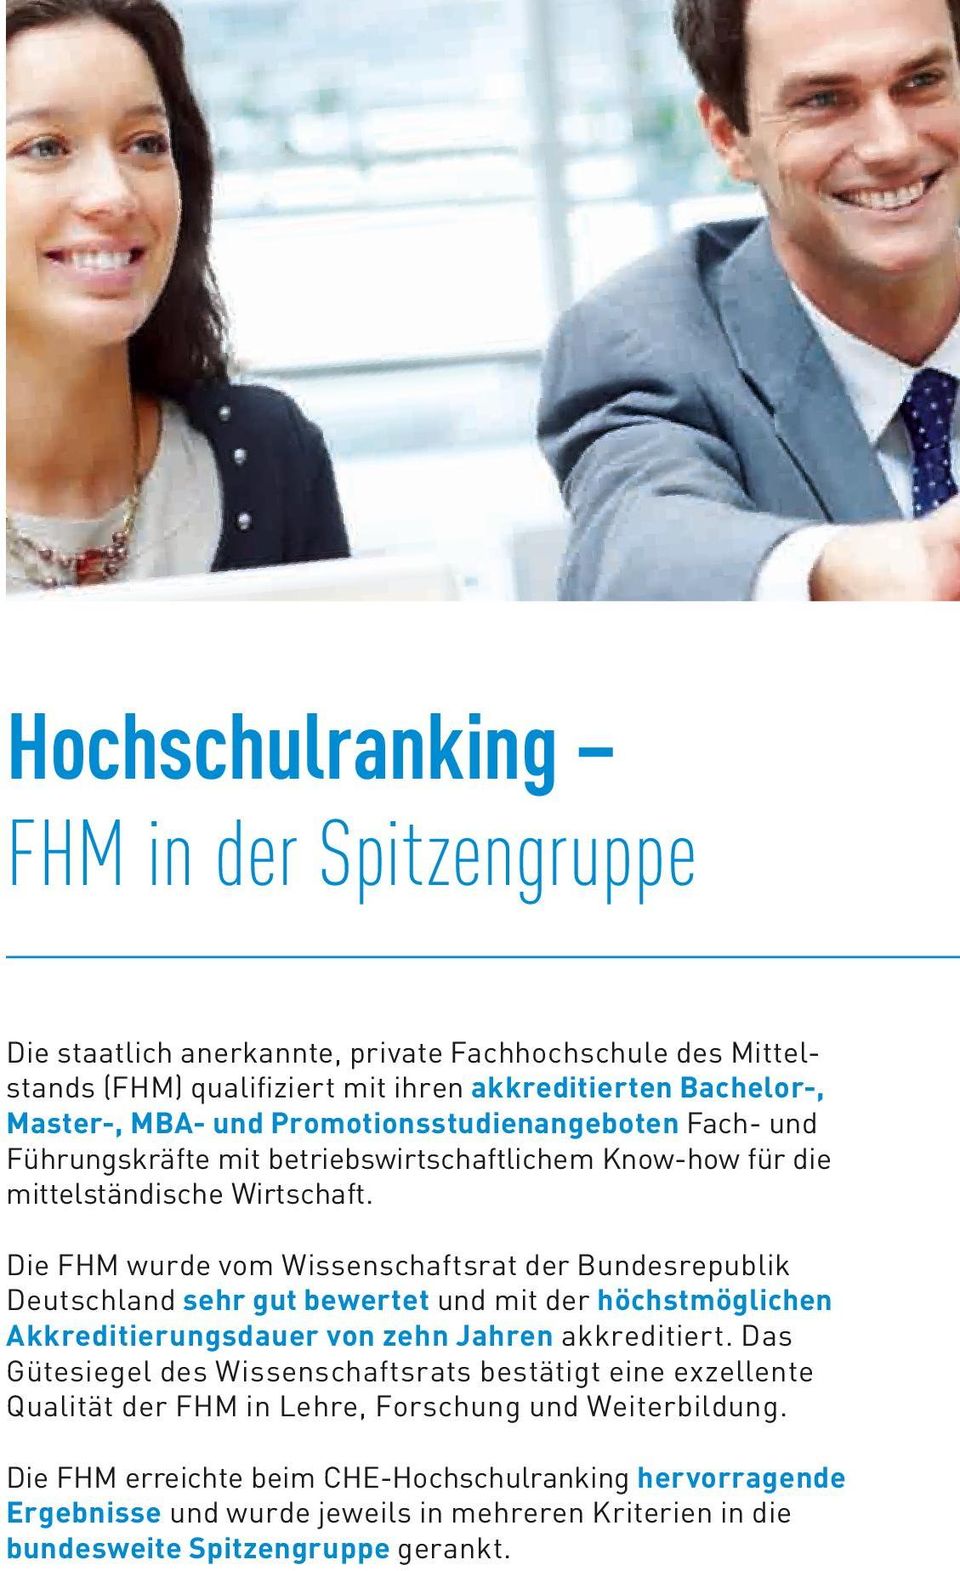 Die FHM wurde vom Wissenschaftsrat der Bundesrepublik Deutschland sehr gut bewertet und mit der höchstmöglichen Akkreditierungsdauer von zehn Jahren akkreditiert.